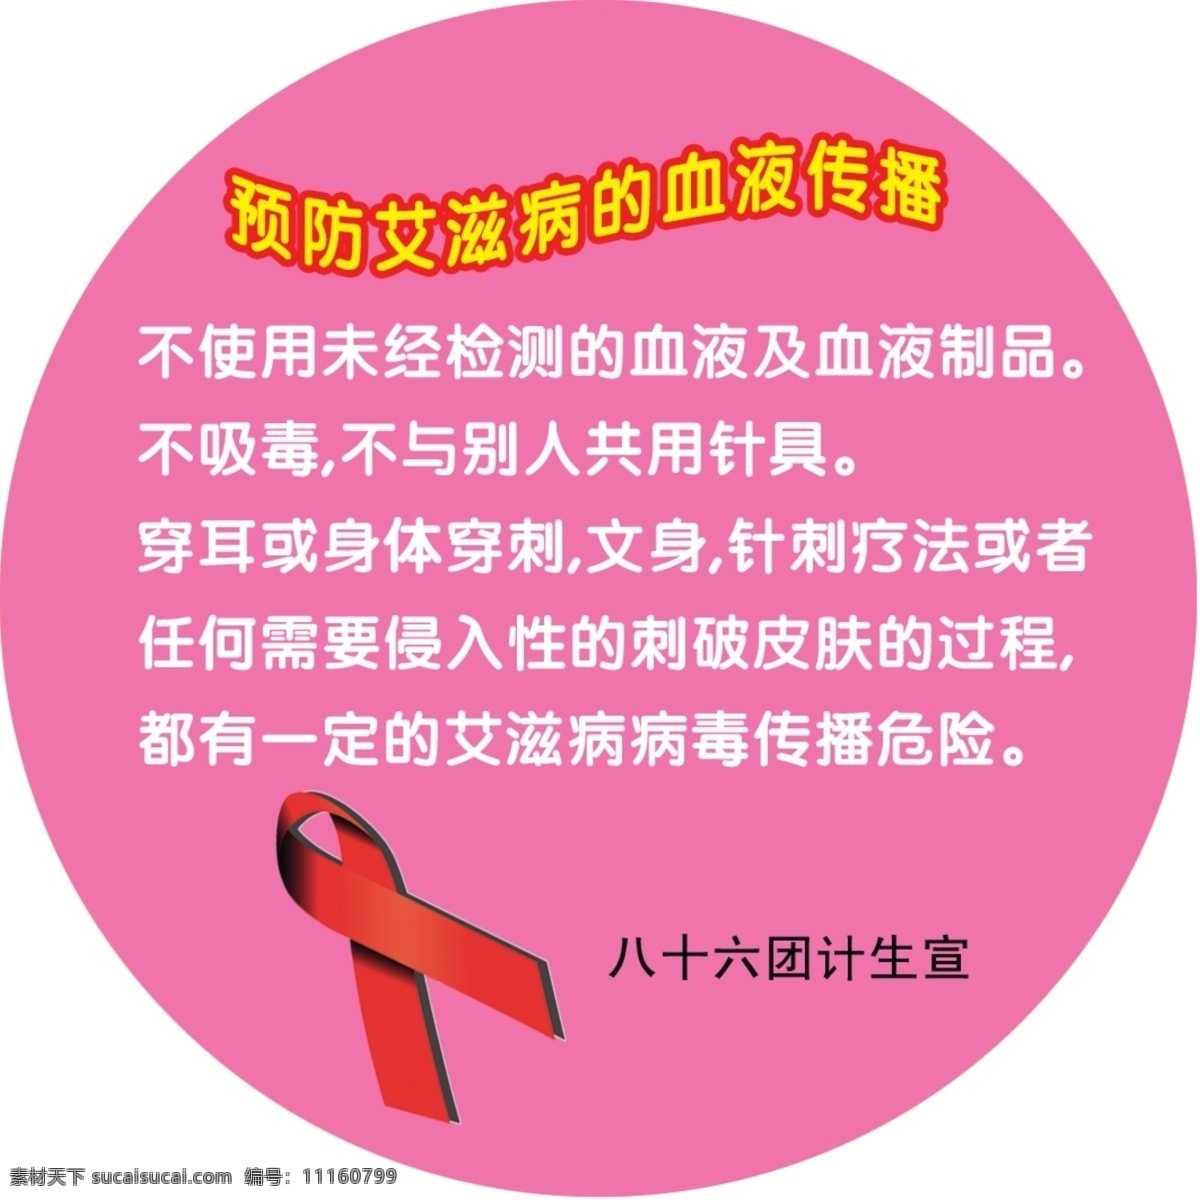 预防 艾滋病 计划生育 失量图 预防艾滋病 招贴设计 异型图 梅红 圆型 海报 其他海报设计